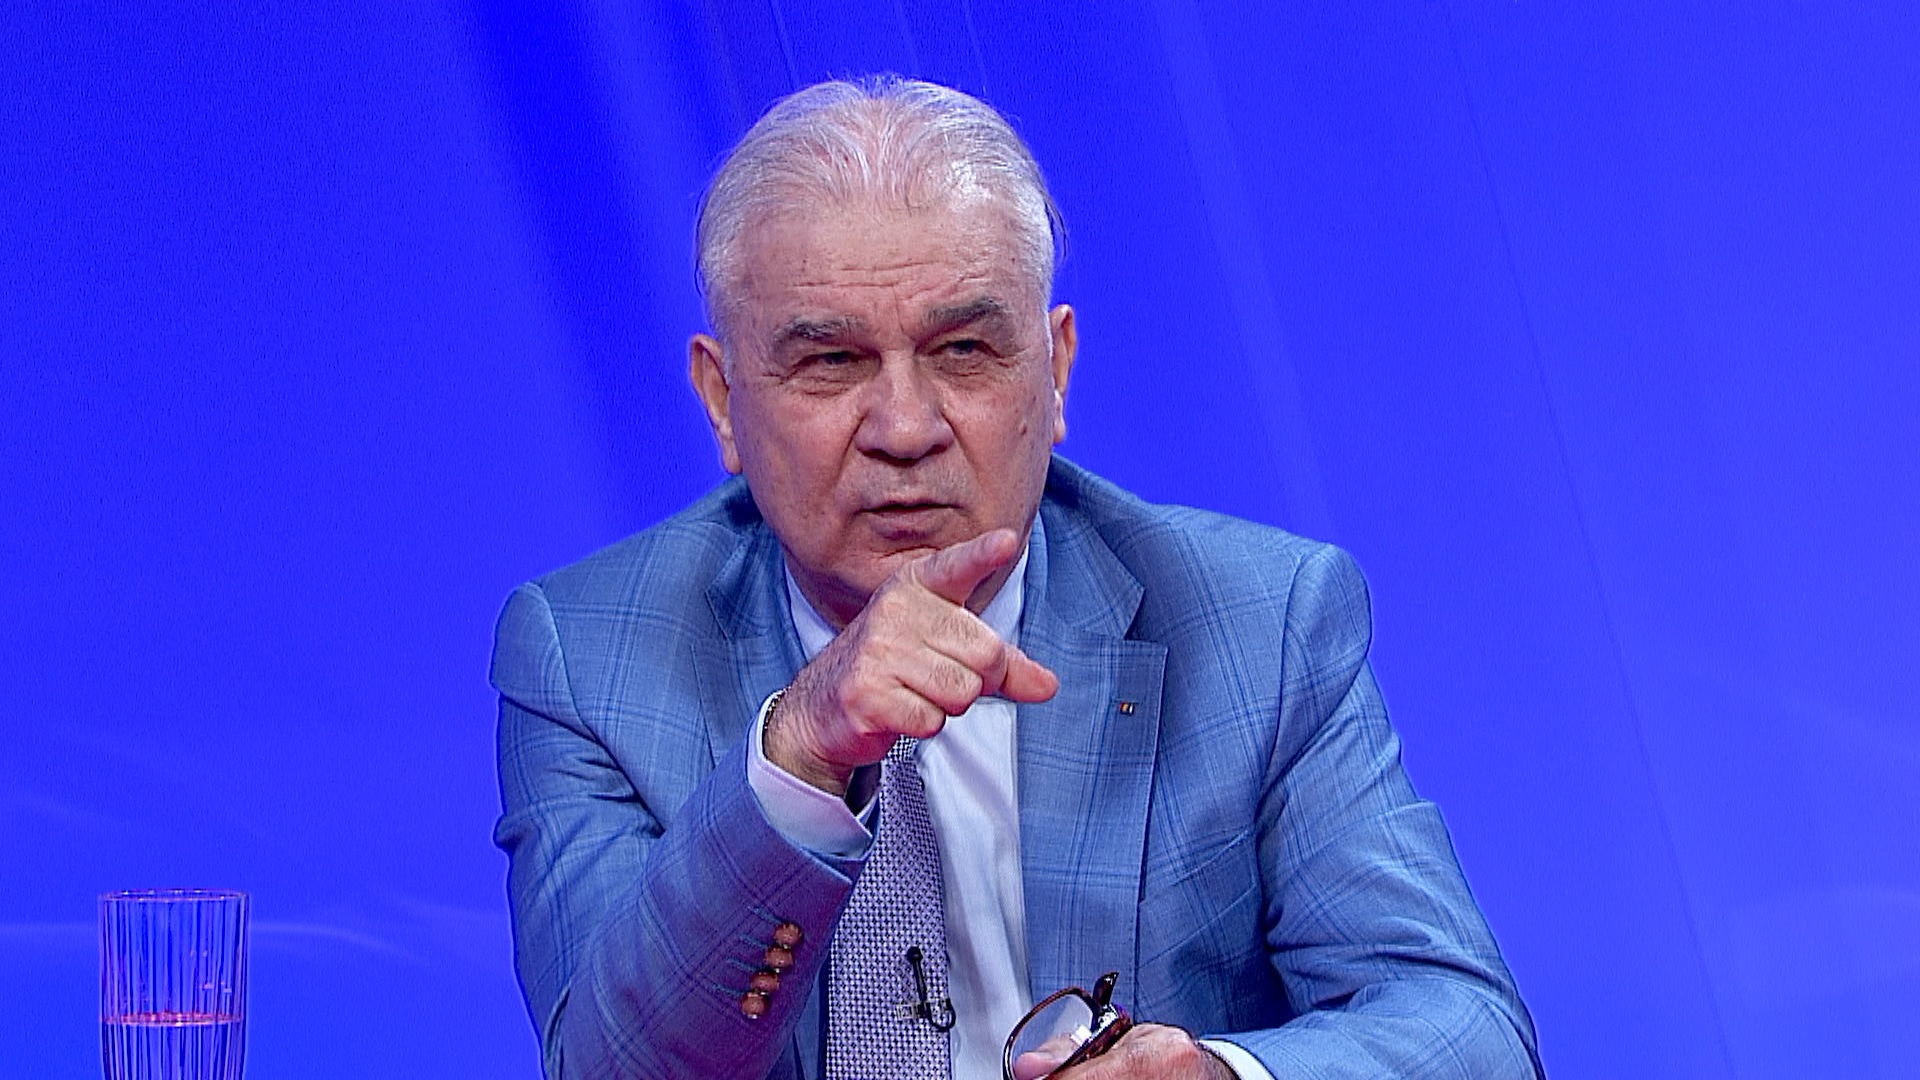 Iordănescu a răbufnit după ce auzit propunerea lui Mircea Lucescu: ”Cea mai mare prostie pe care o putea spune”